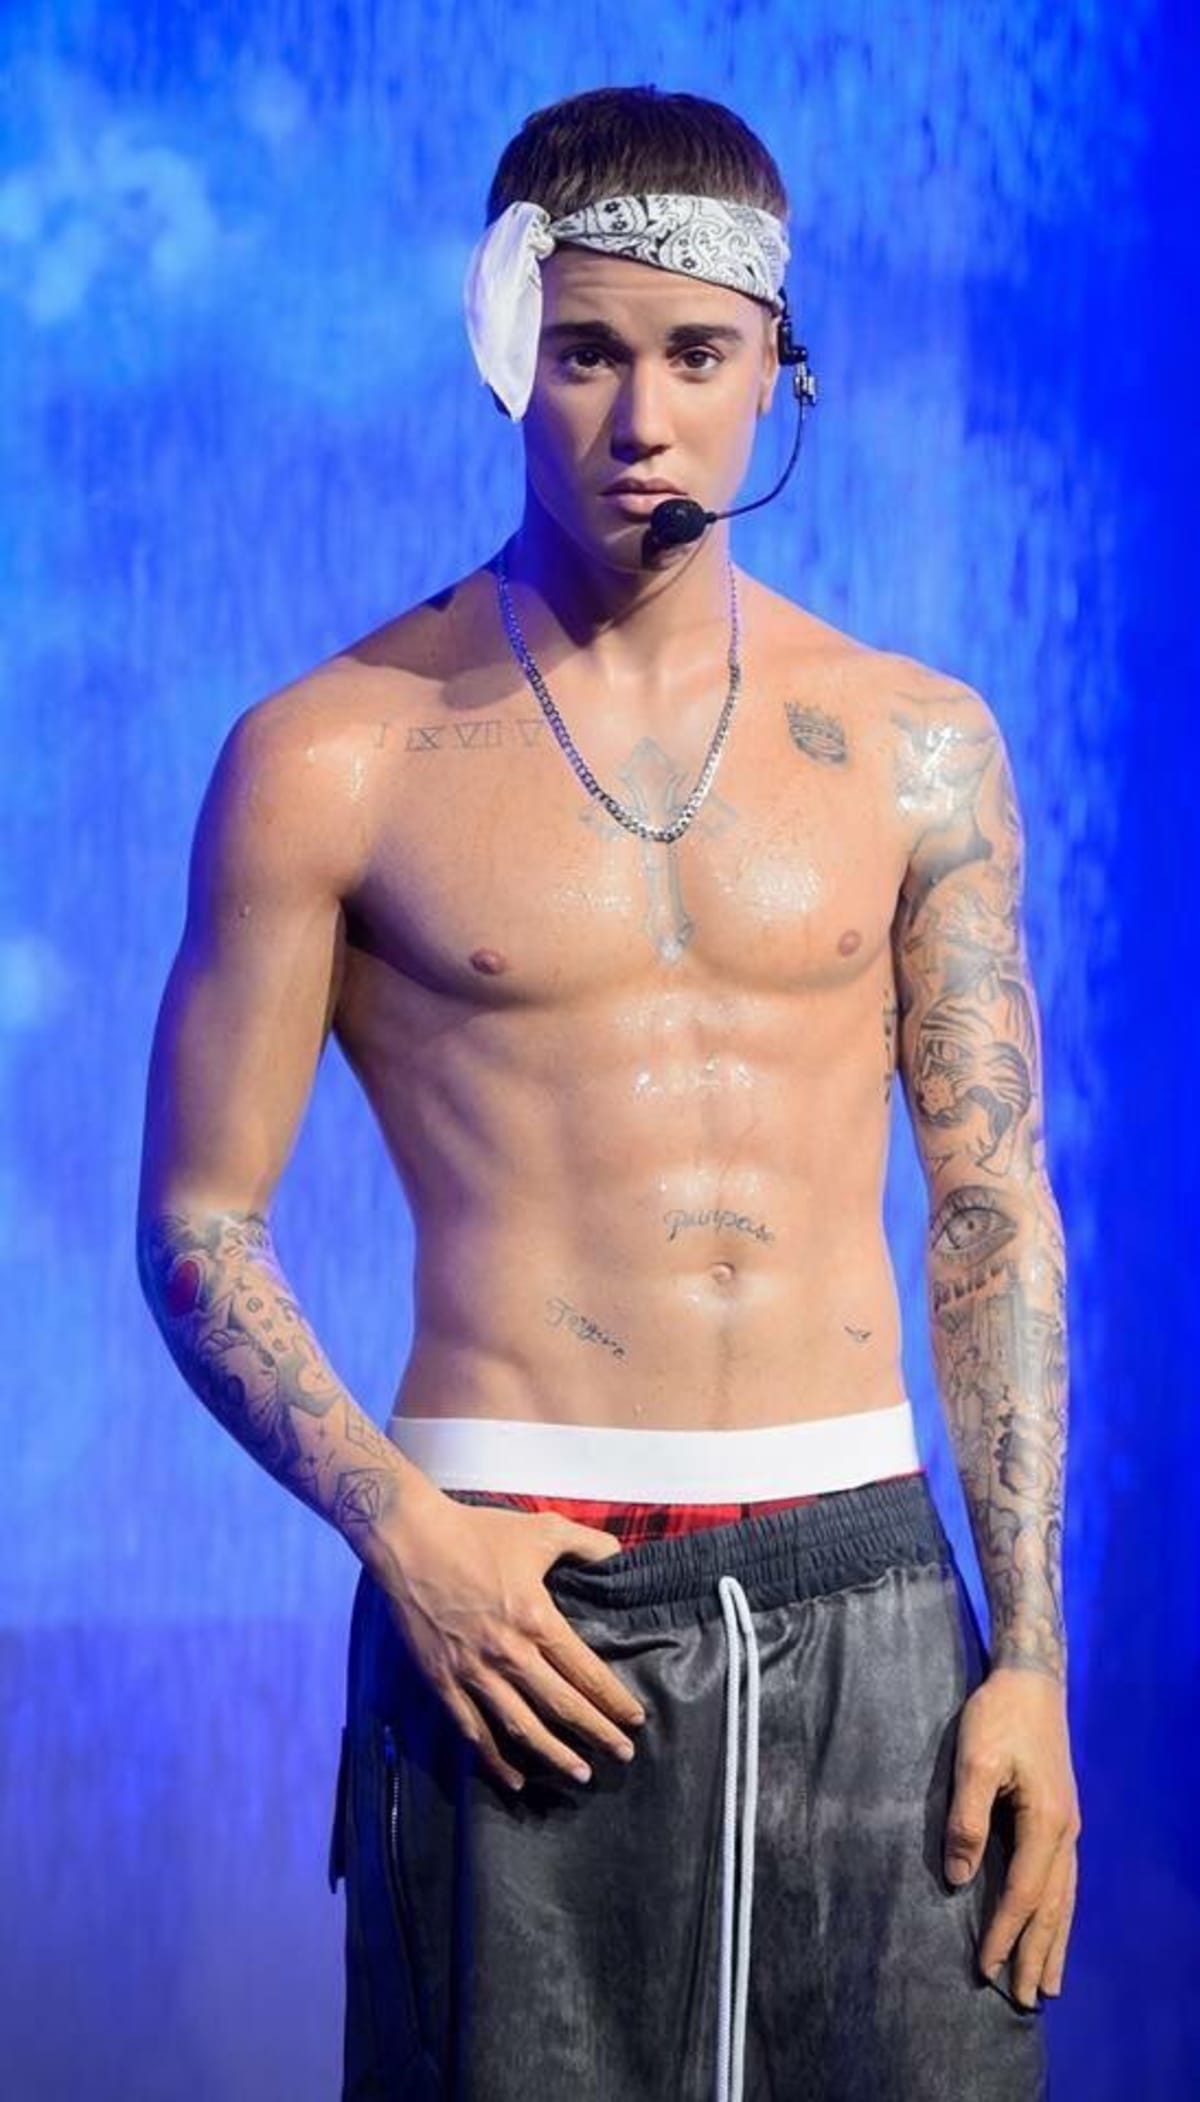 New Justin Bieber Wax Figure Unveiled in London | Complex - 1200 x 2102 jpeg 156kB